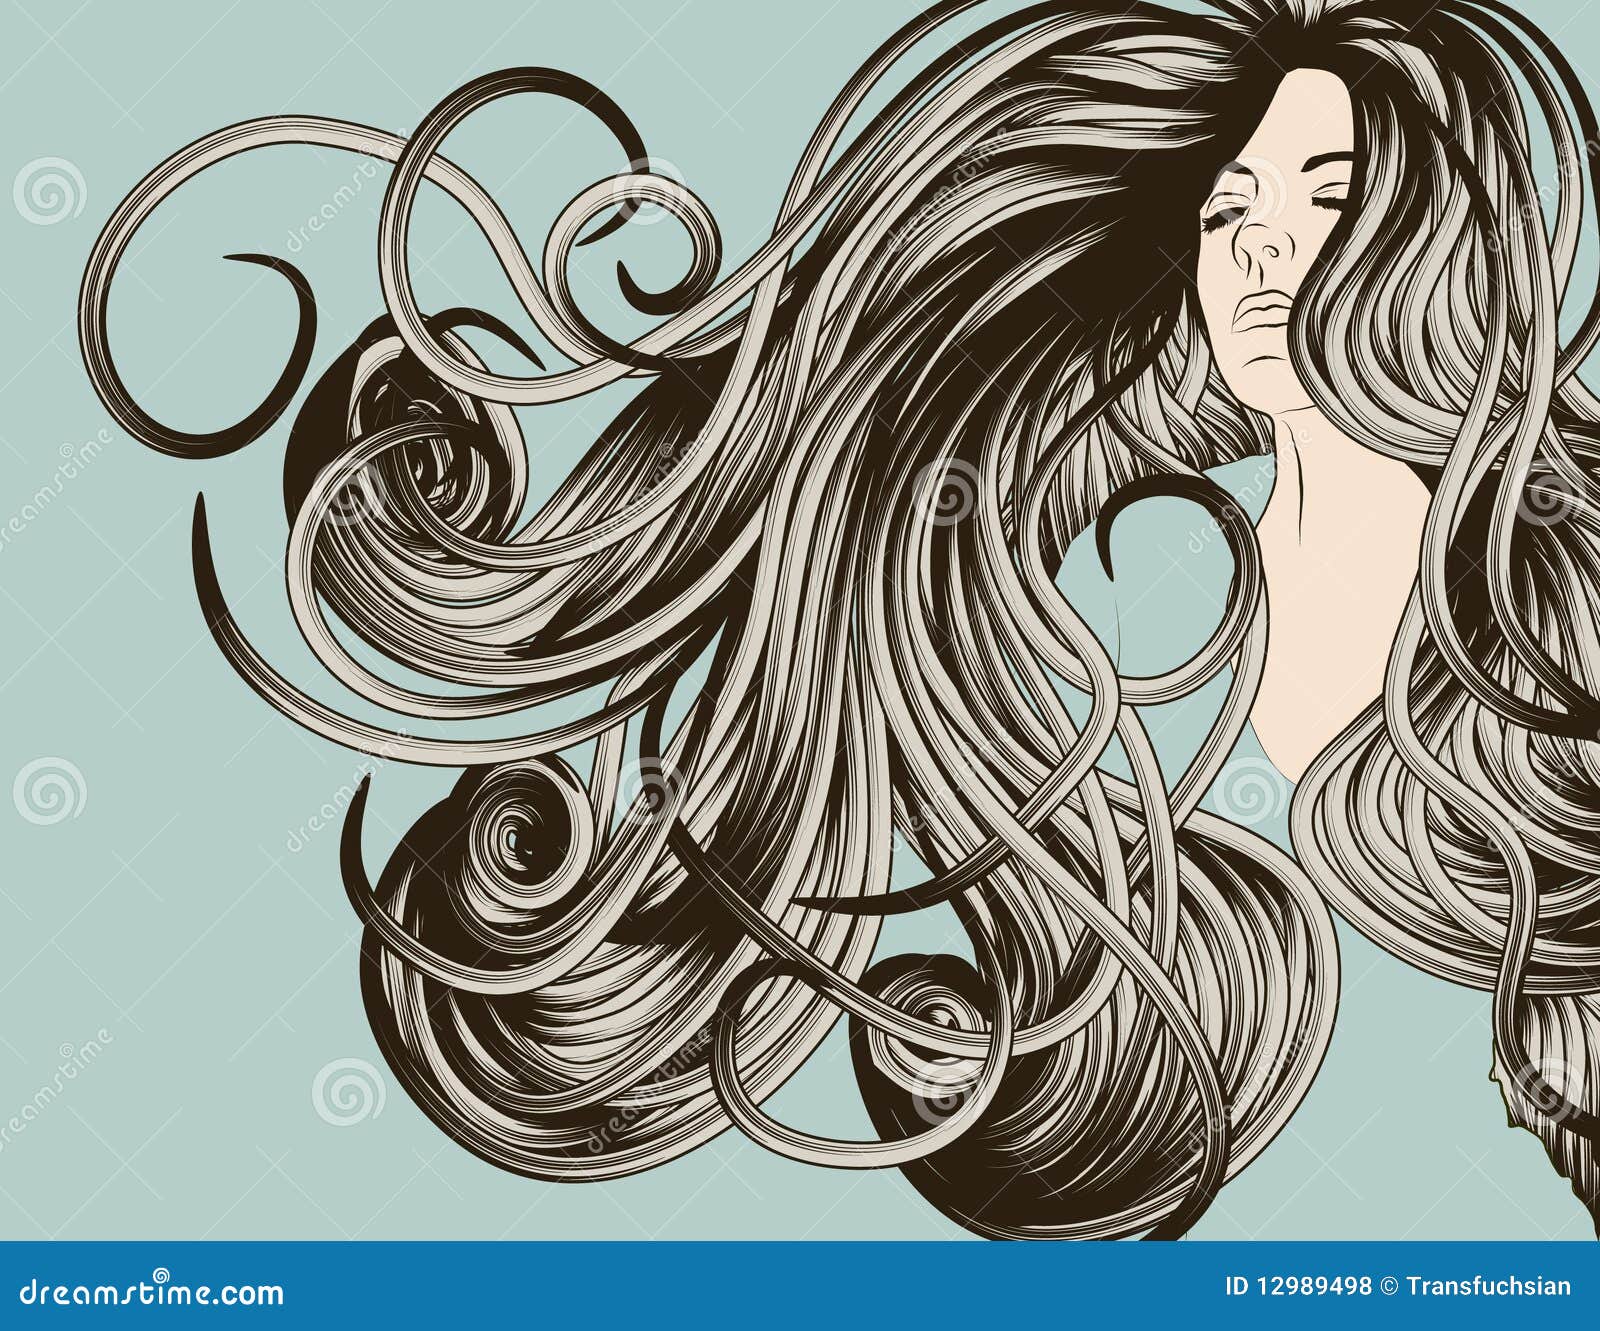 Flowing Hair Girl Logo - wide 9